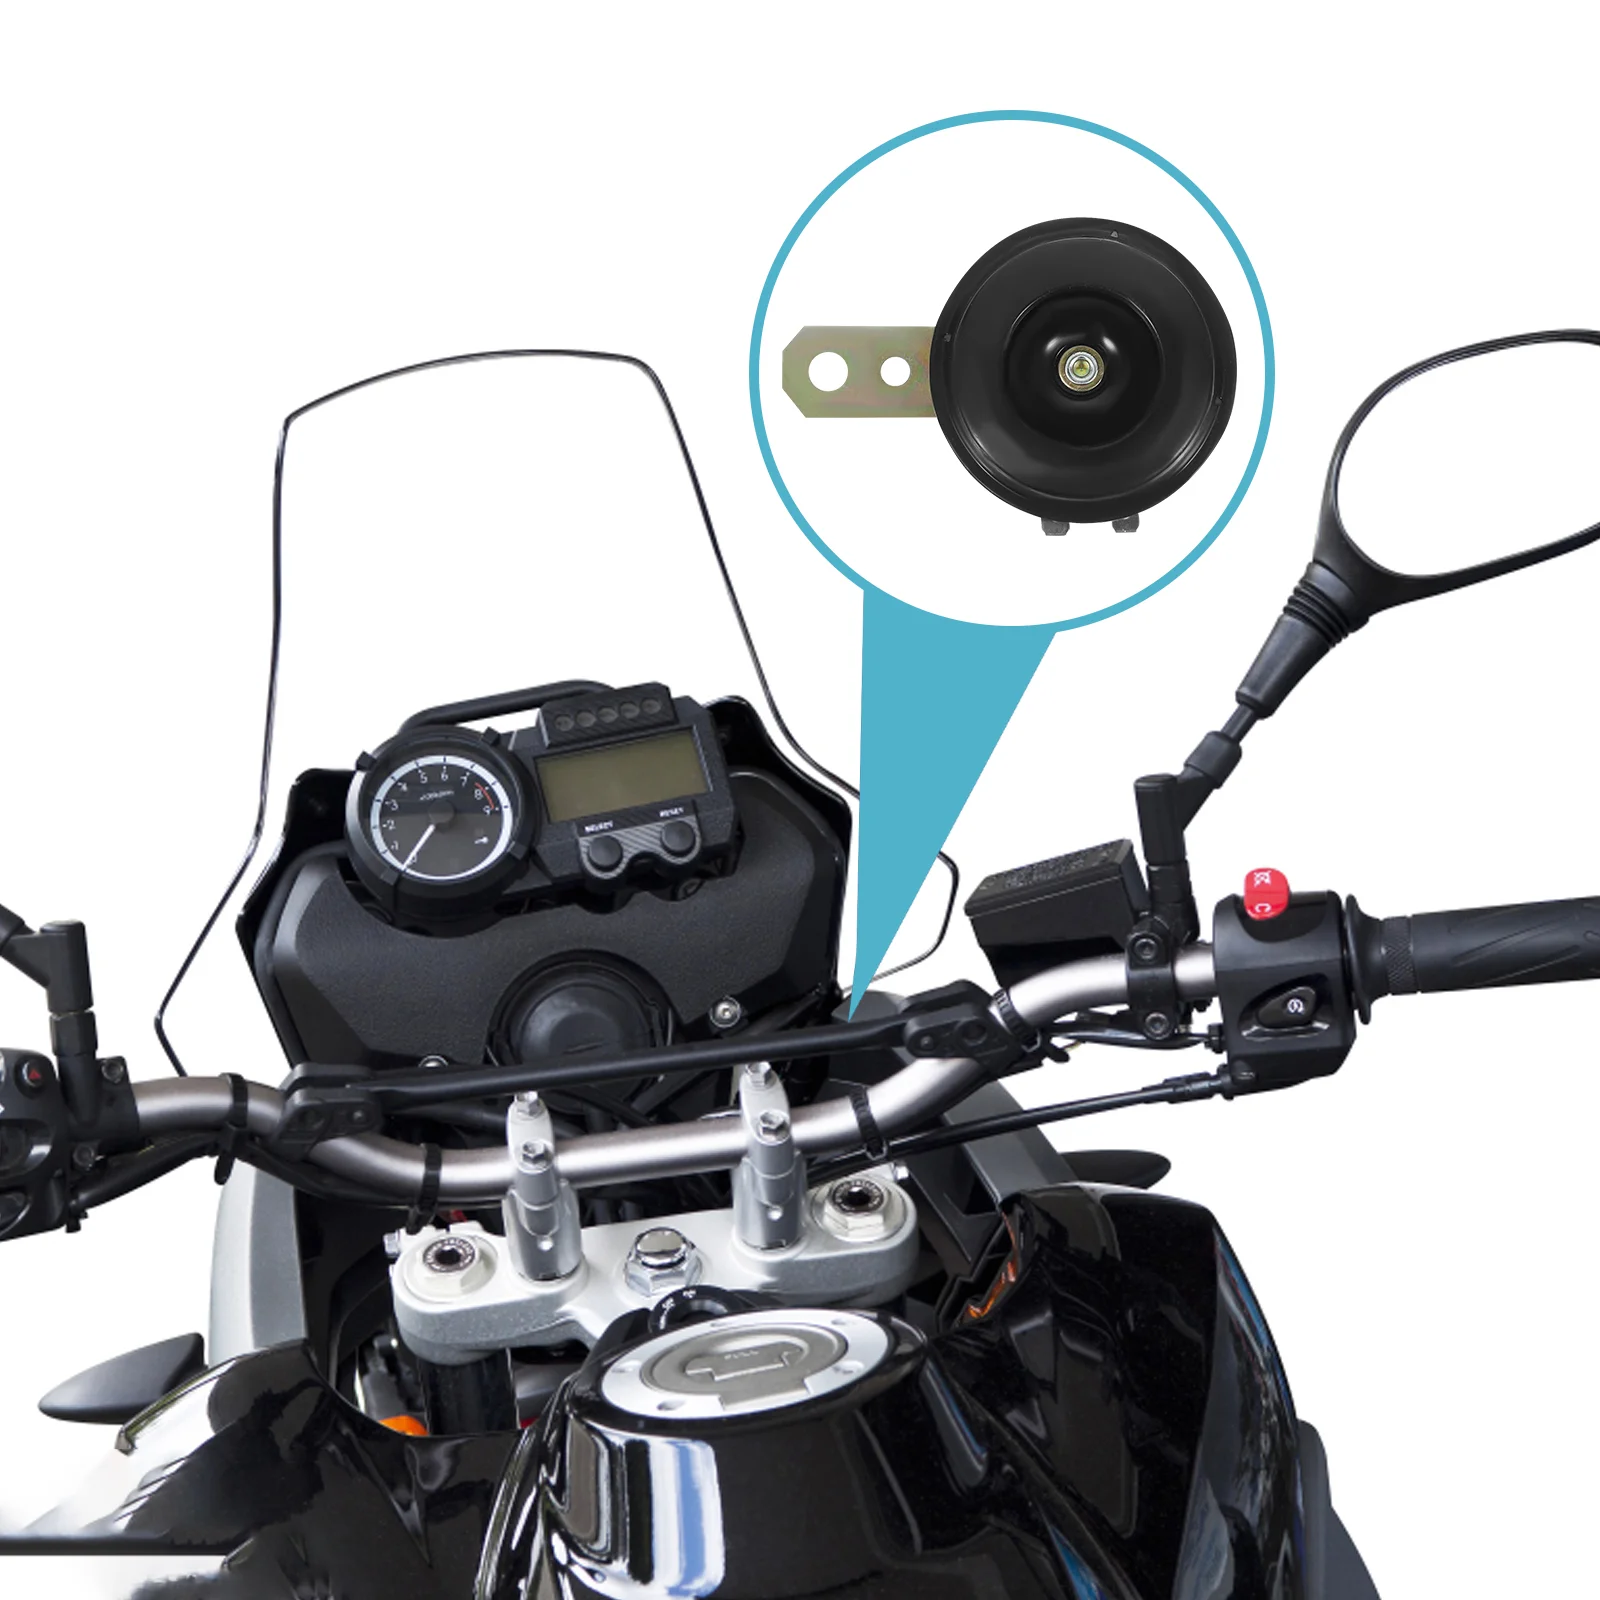 

Universal Motorcycle Air Horn 12V Super Loud 110dB for Scooter Moped Dirt Bike ATV Go-Kart Dirt Bike Pocket Bikes